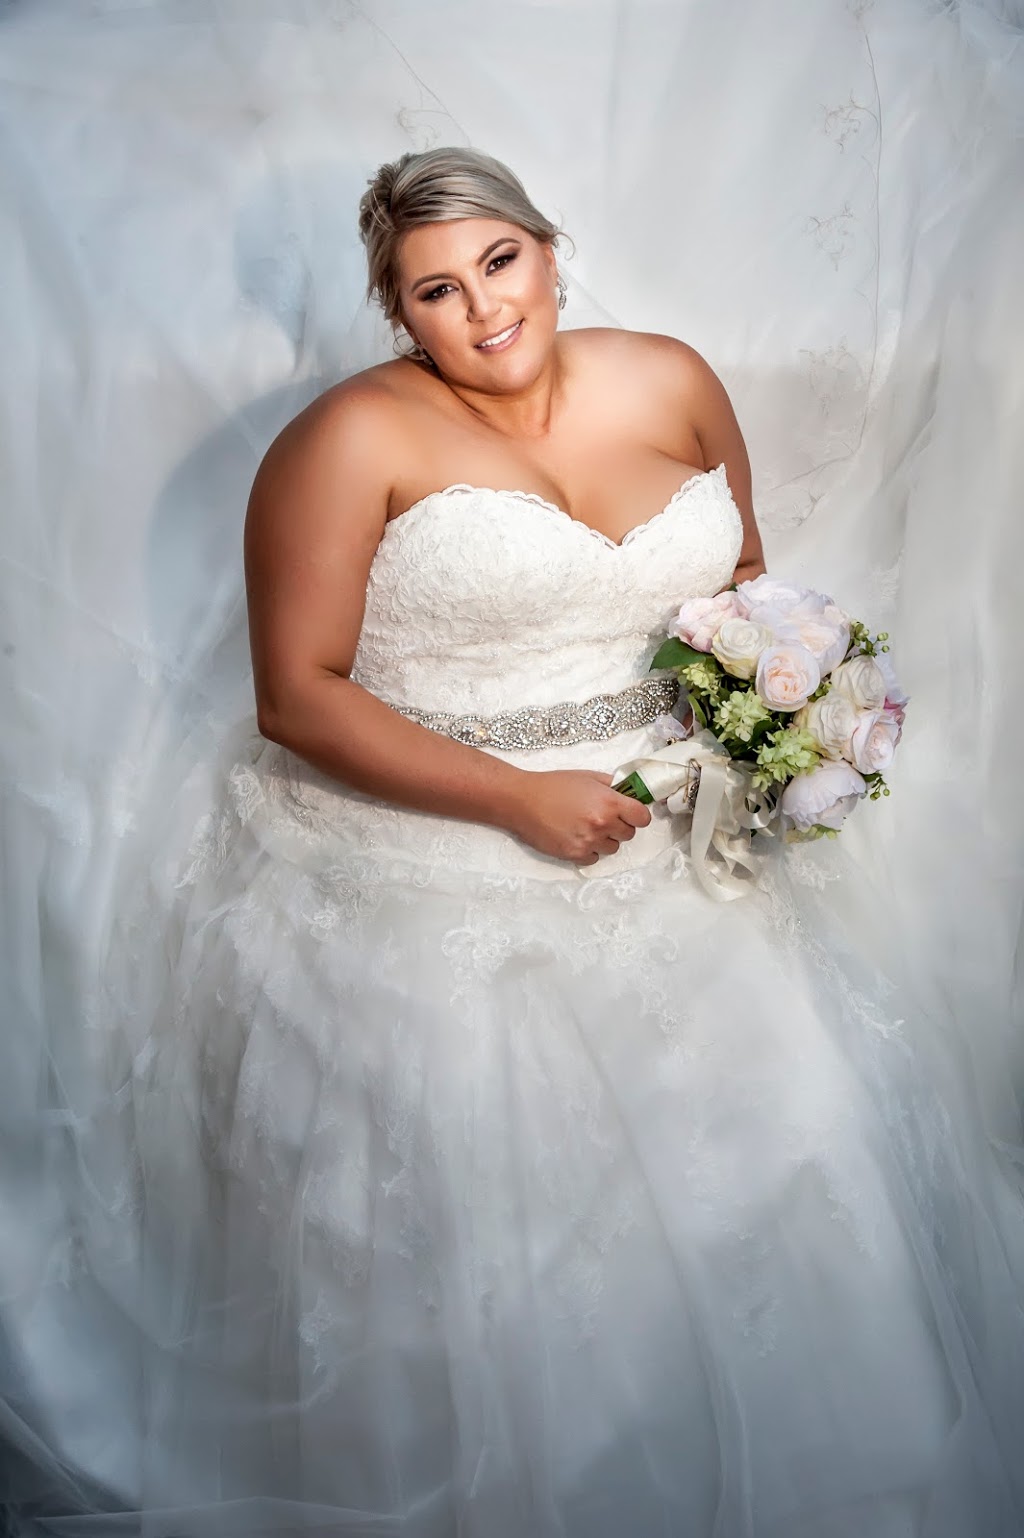 Toowoomba Wedding Photography | 38 Brimblecombe Dr, Middle Ridge QLD 4350, Australia | Phone: 0411 323 814